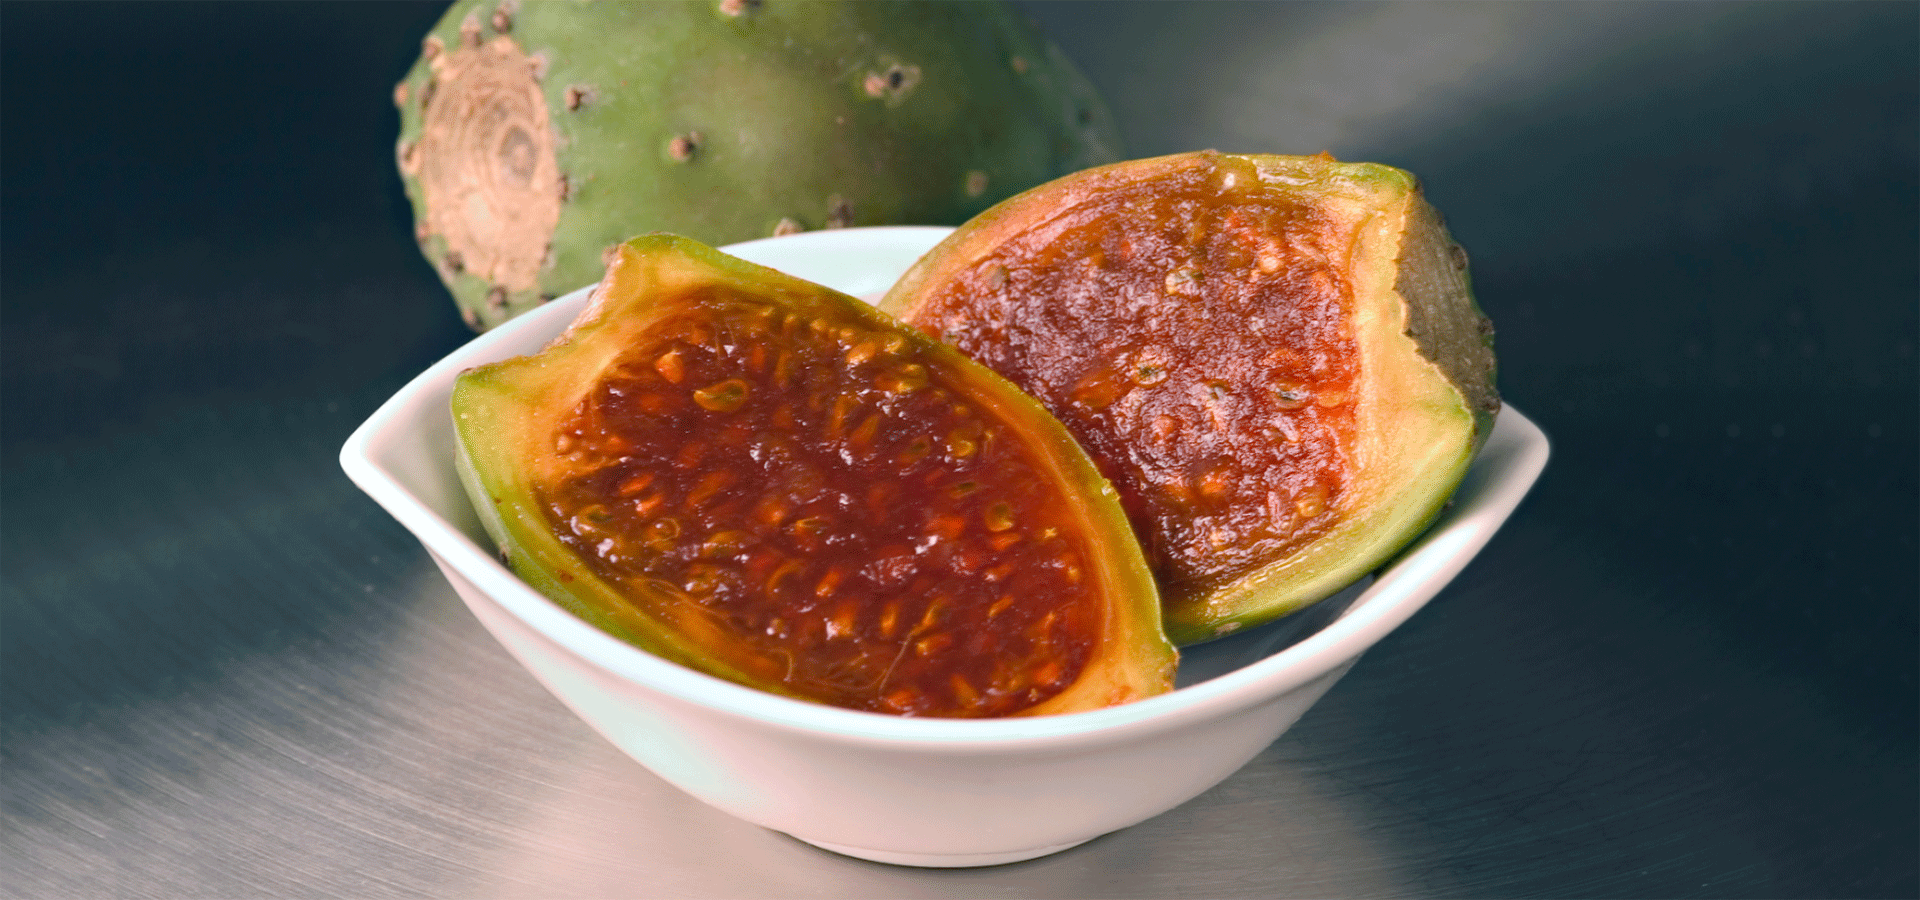 Mermelada de higo pico: el ingrediente más especial de la comida canaria